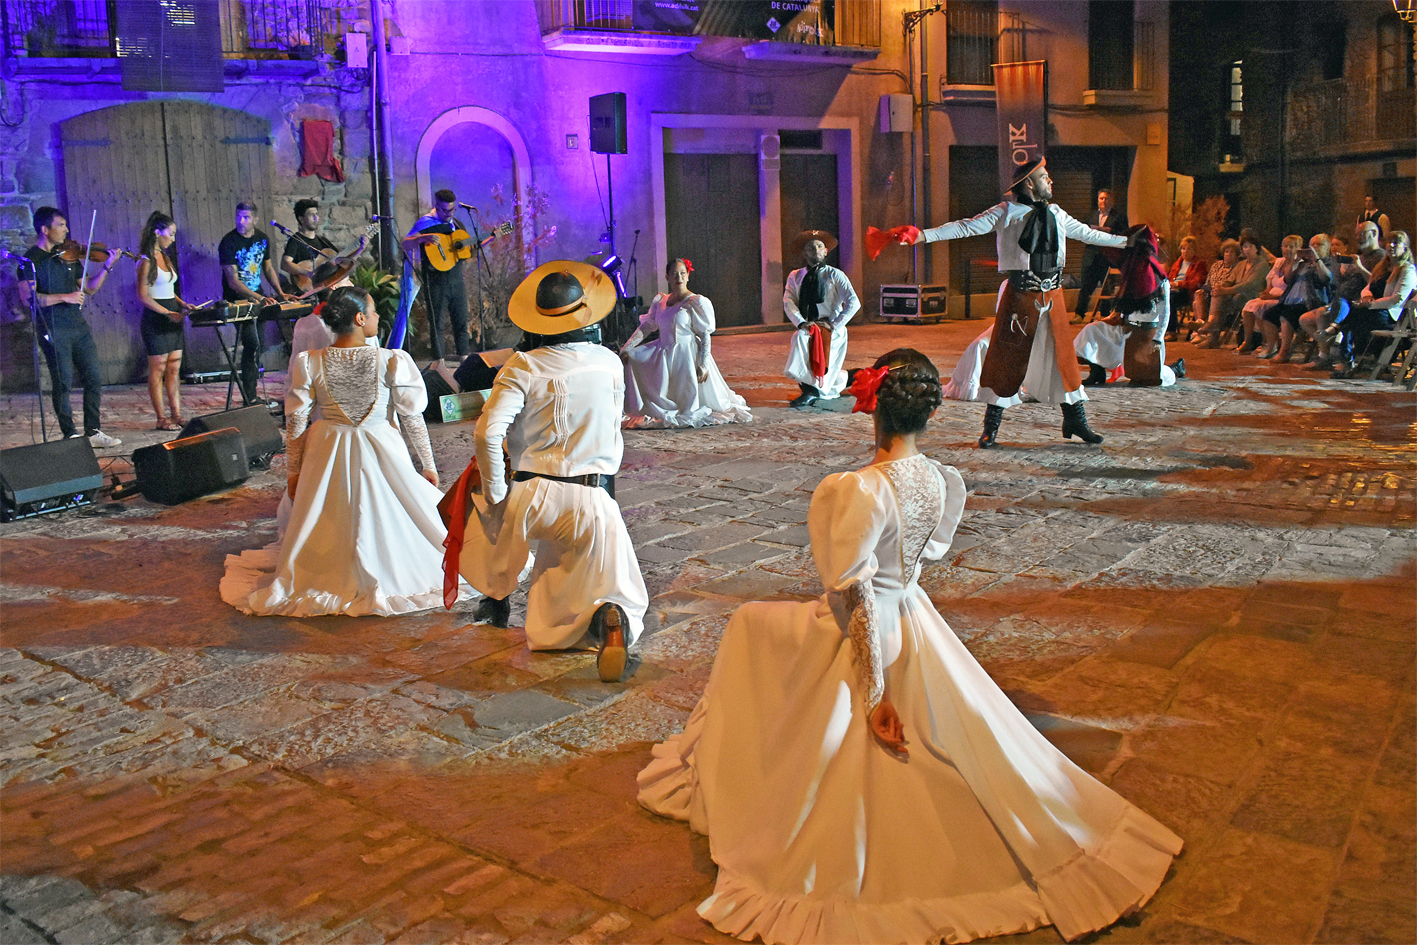 Actuació de la Compañía Folklórica Danzantes i el grup musical Terranova (Argentina) a la plaça Major del Poble Vell, dins de la 51a edició de les Jornades Internacionals Folklòriques i del programa de l'Onze de Setembre a Súria.